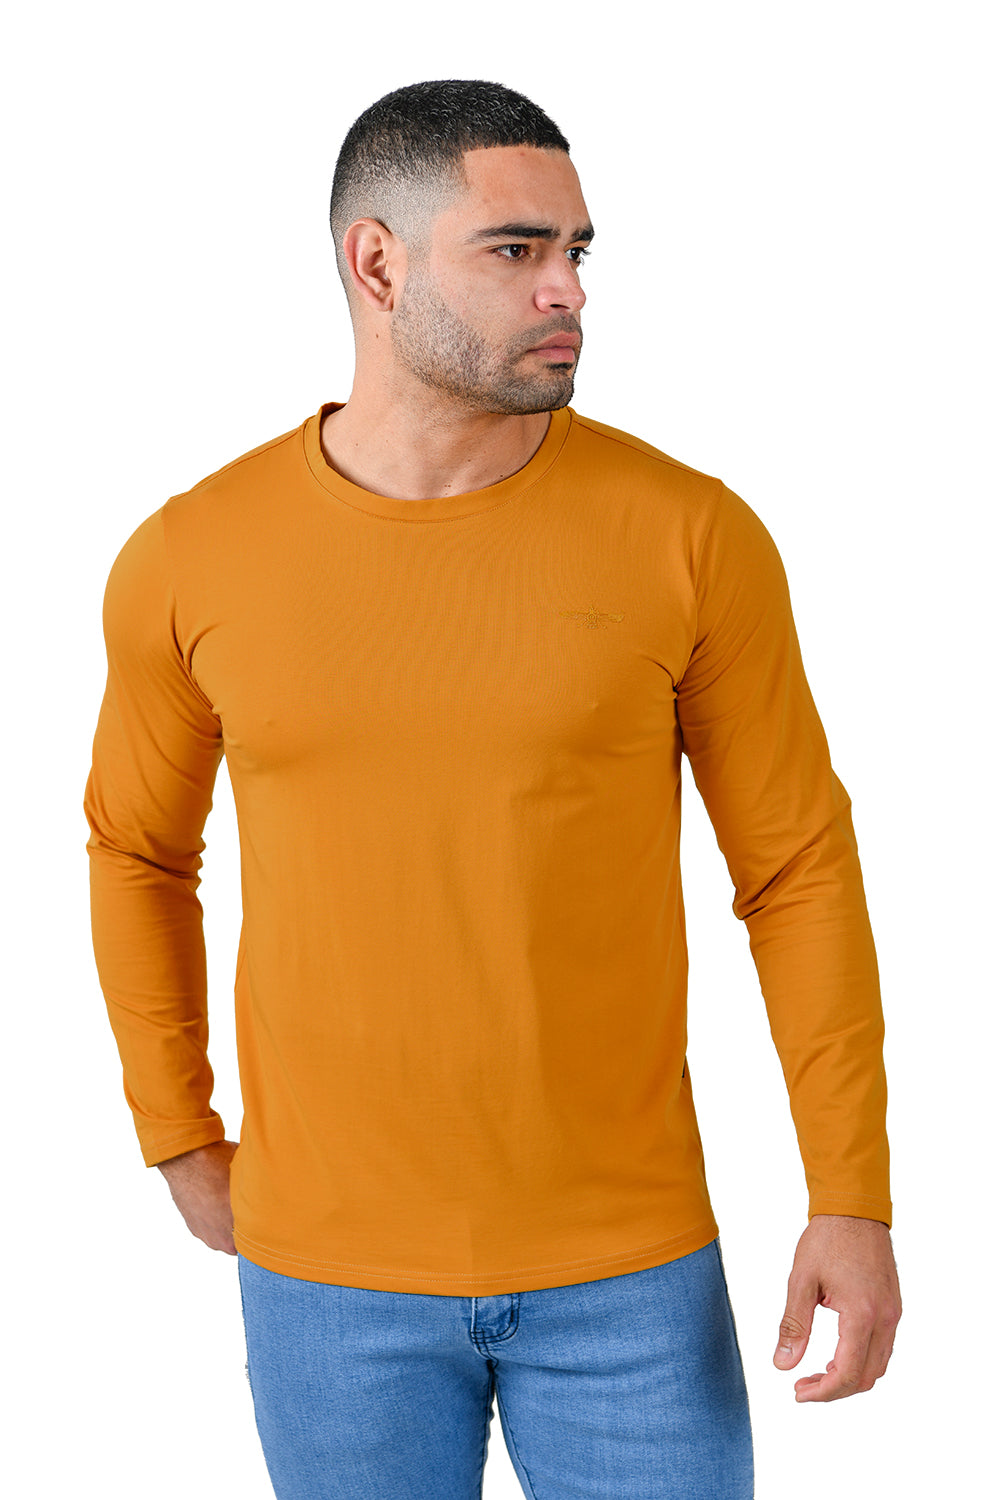 Barabas Men's Solid Color Crew Neck Sweatshirts LV127 Mustard